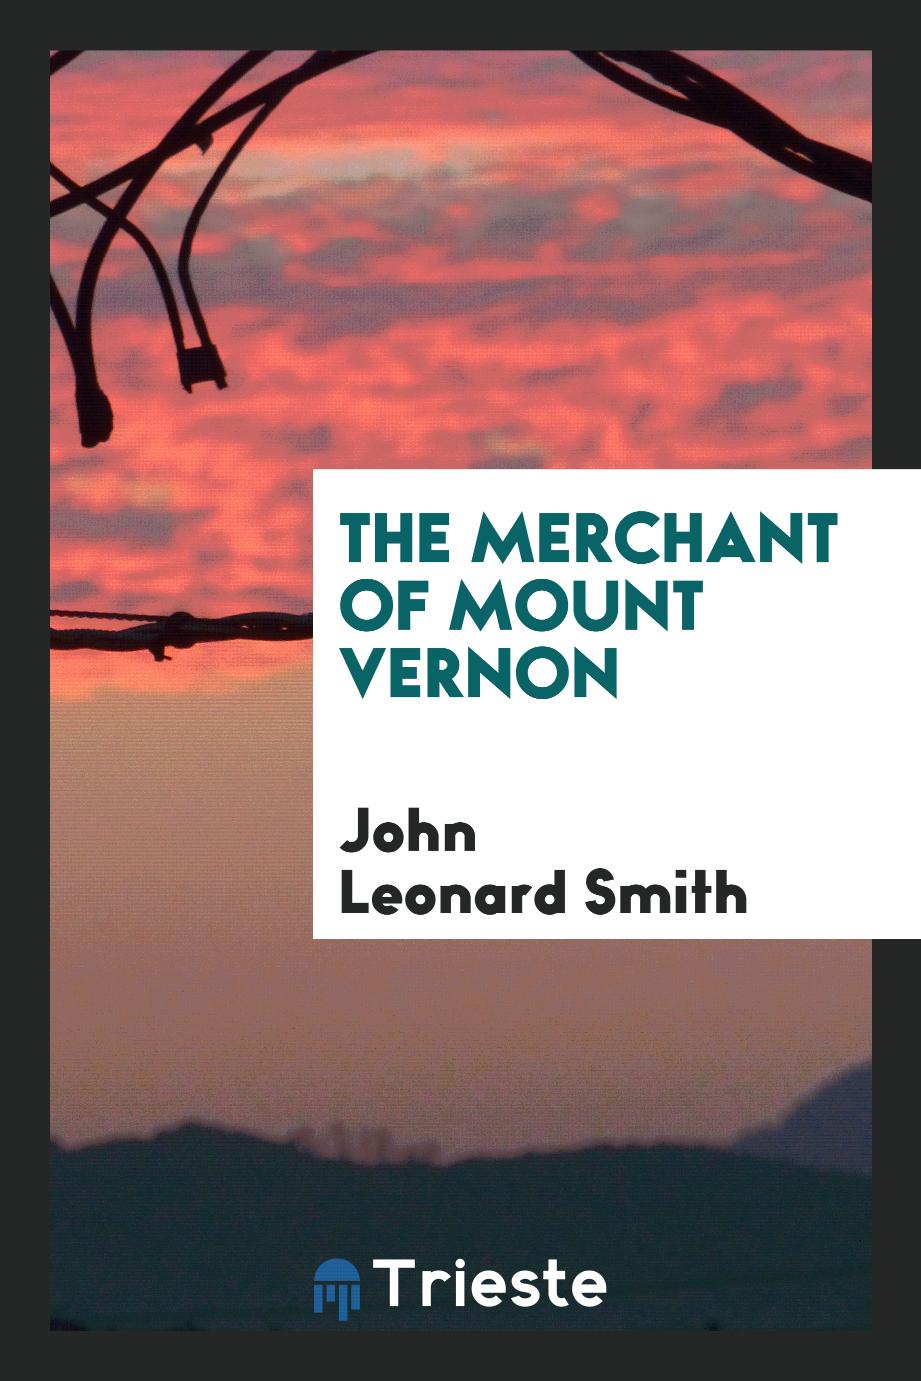 The merchant of Mount Vernon